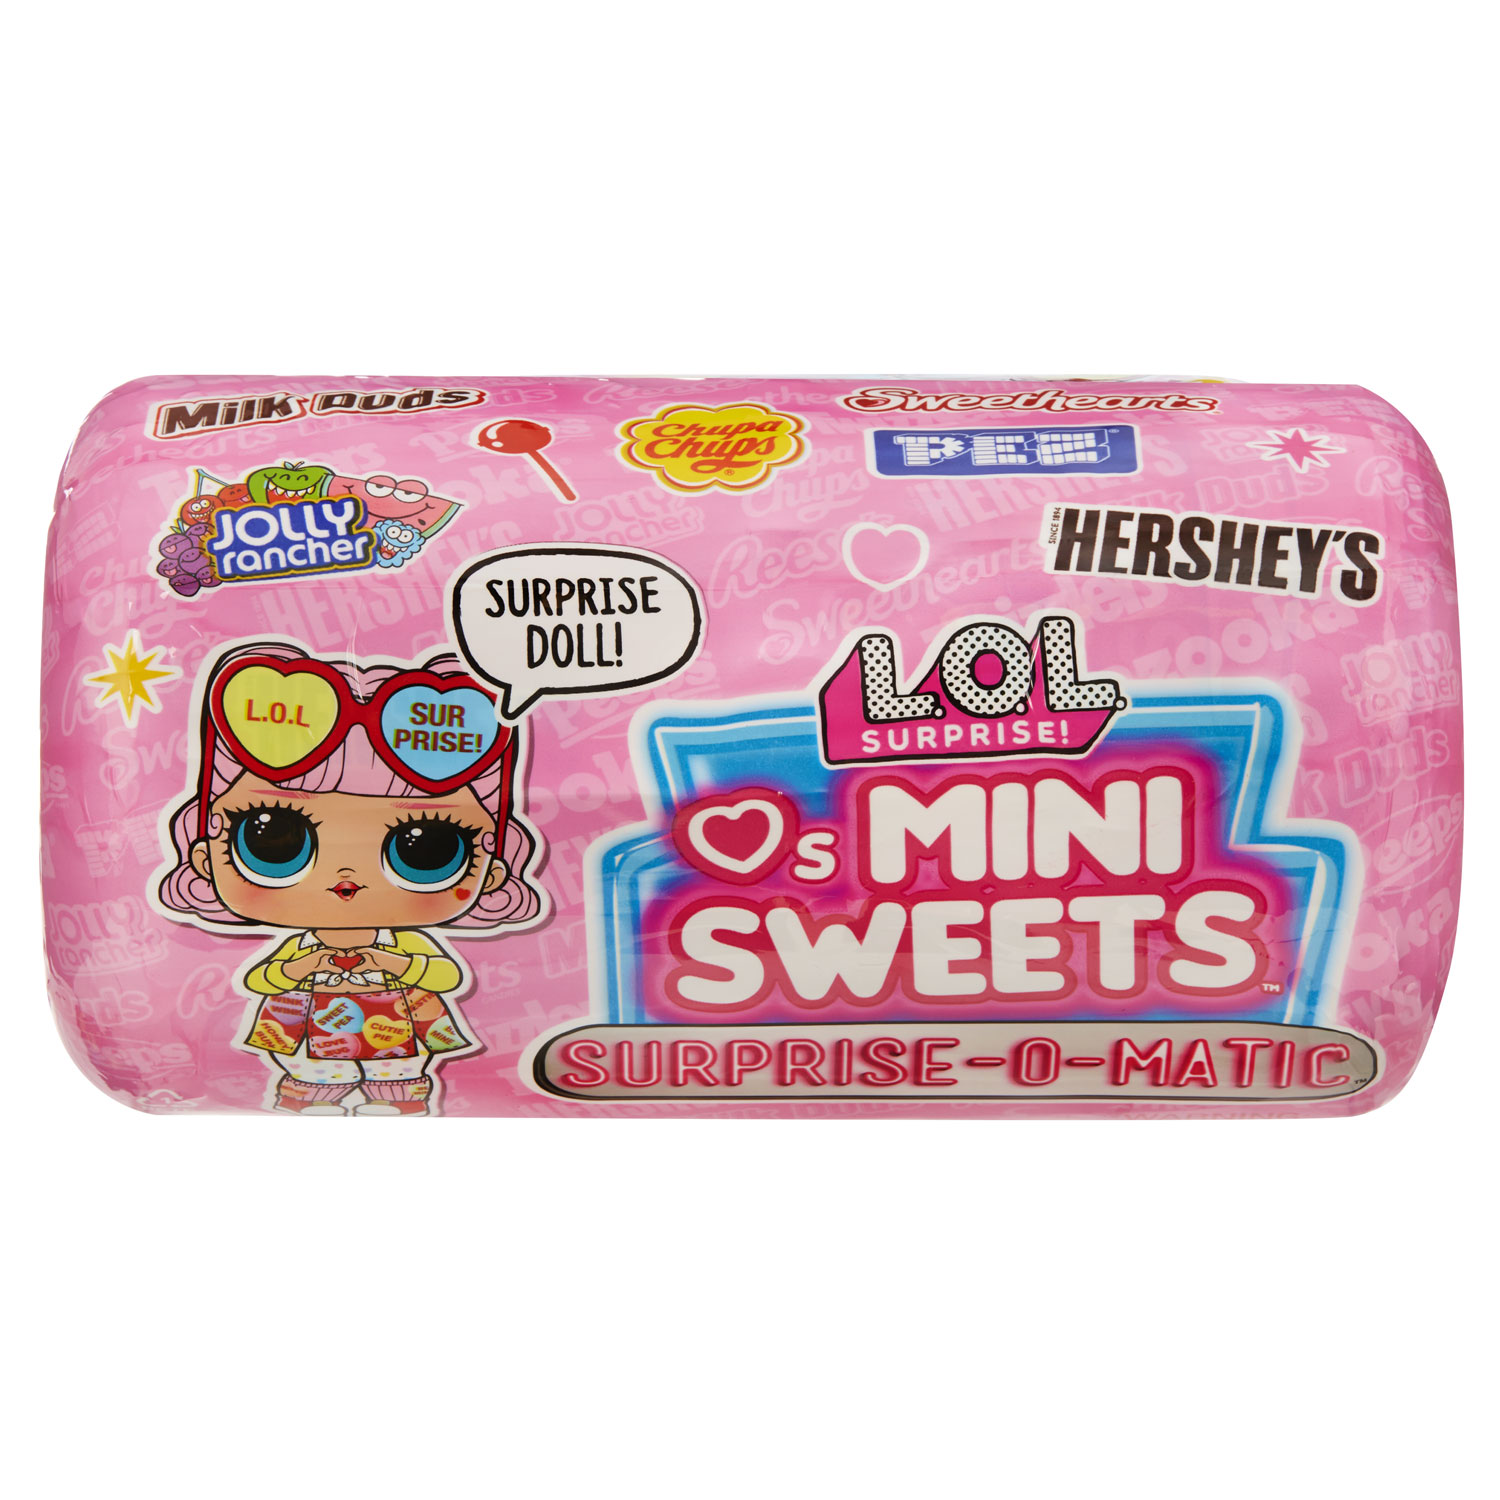 L.O.L. Surprise Loves Mini Pop Sweets Surprise-O-Matic